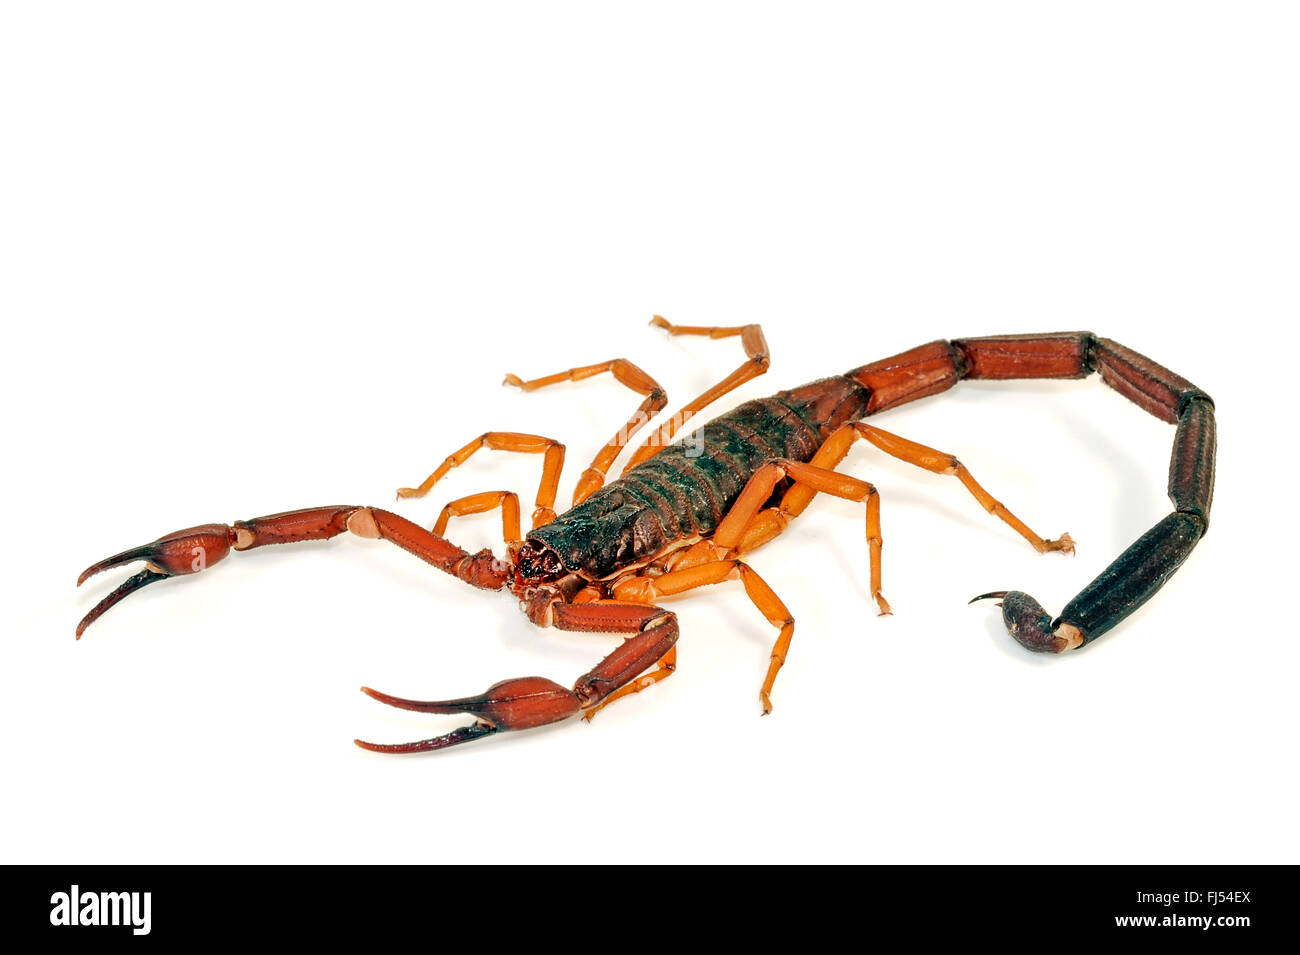 L'écorce de la Floride, scorpion scorpion, écorce brun foncé brun mince (scorpion Centruroides gracilis), cut-out Banque D'Images